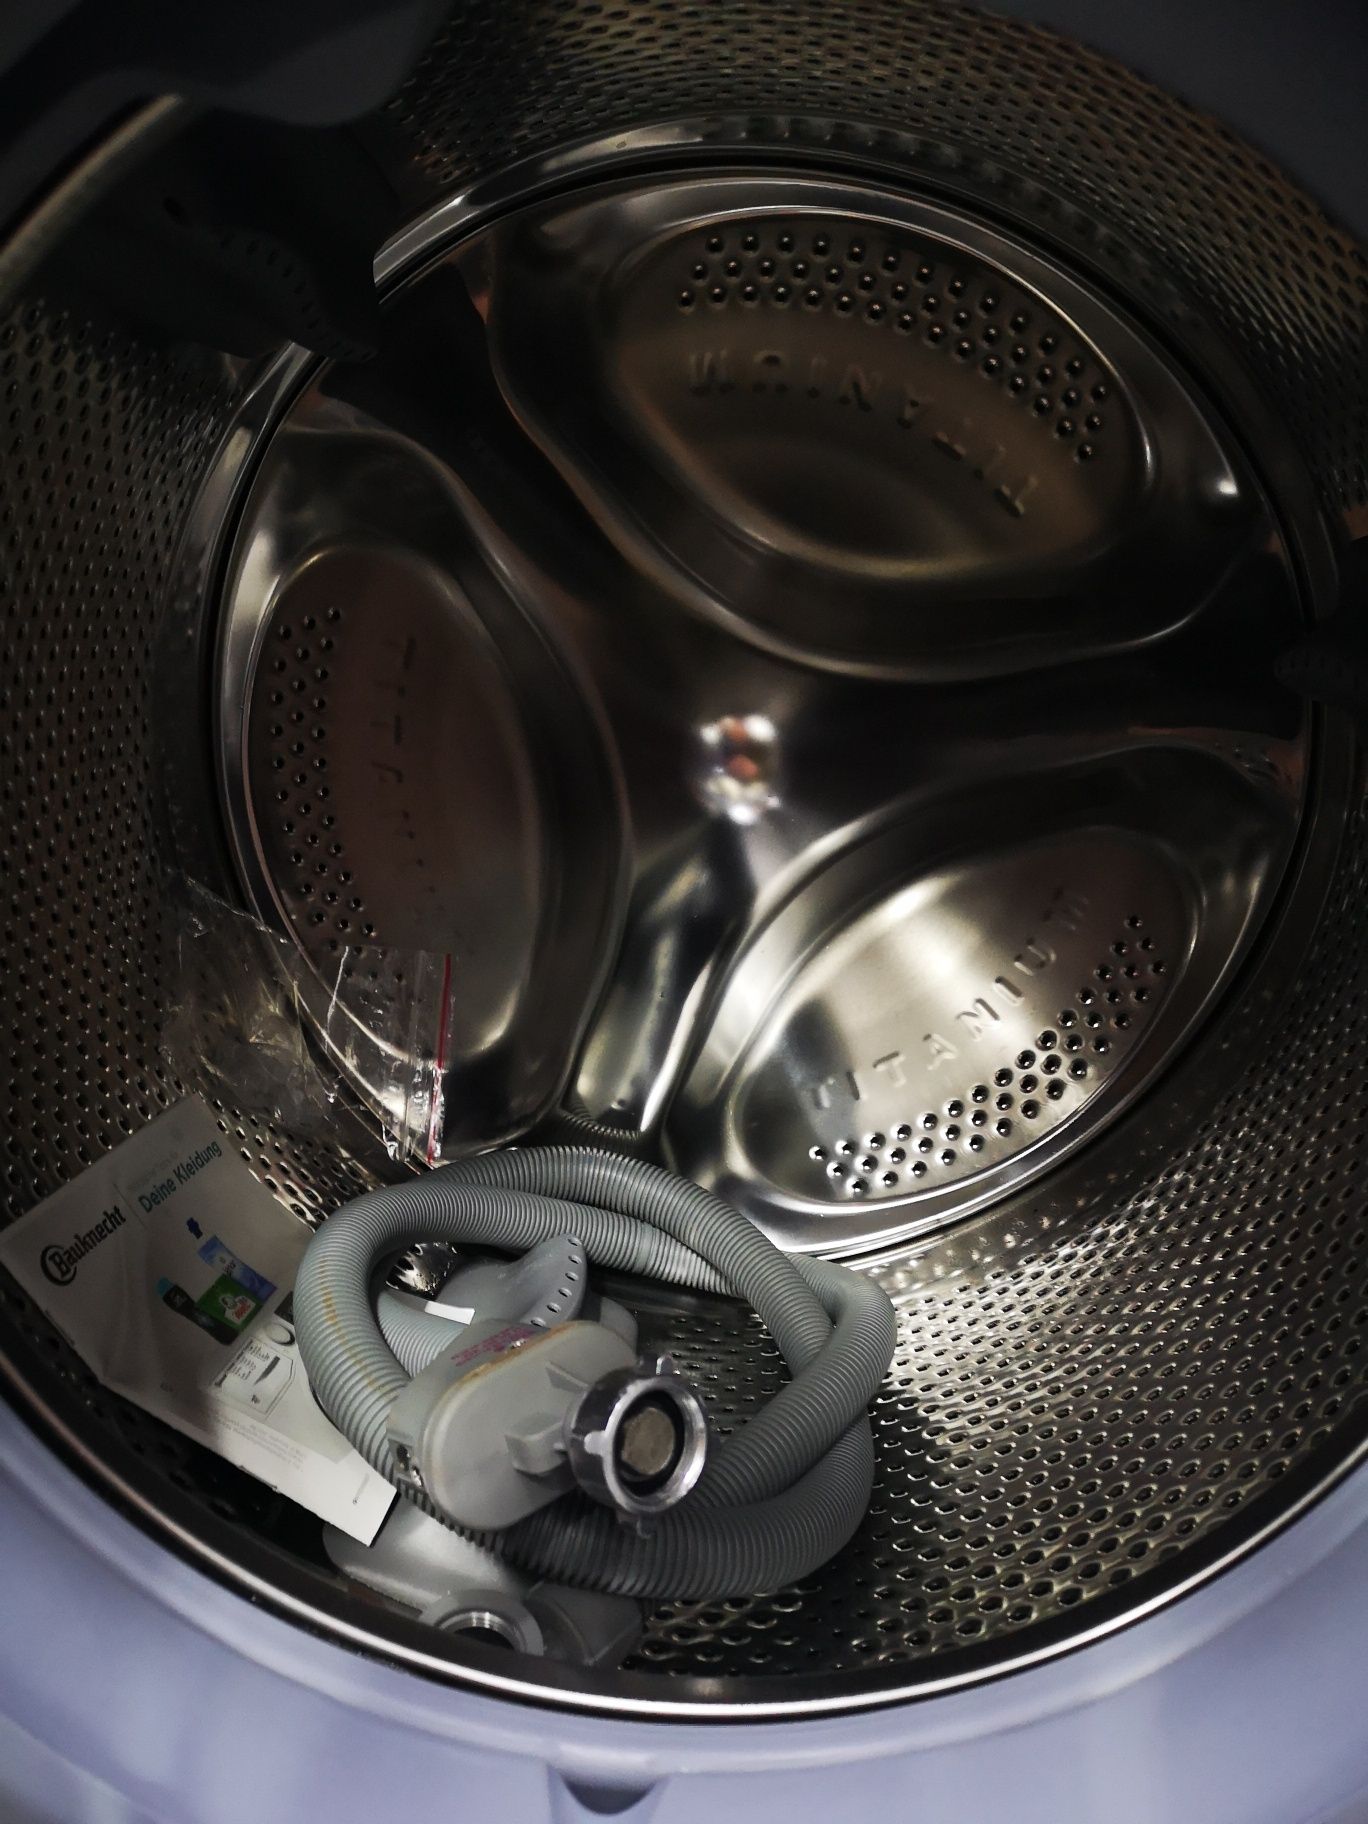 Mașina de spălat Bauknecht 11kg cu uscator Cuva Titanium Garanție MD22